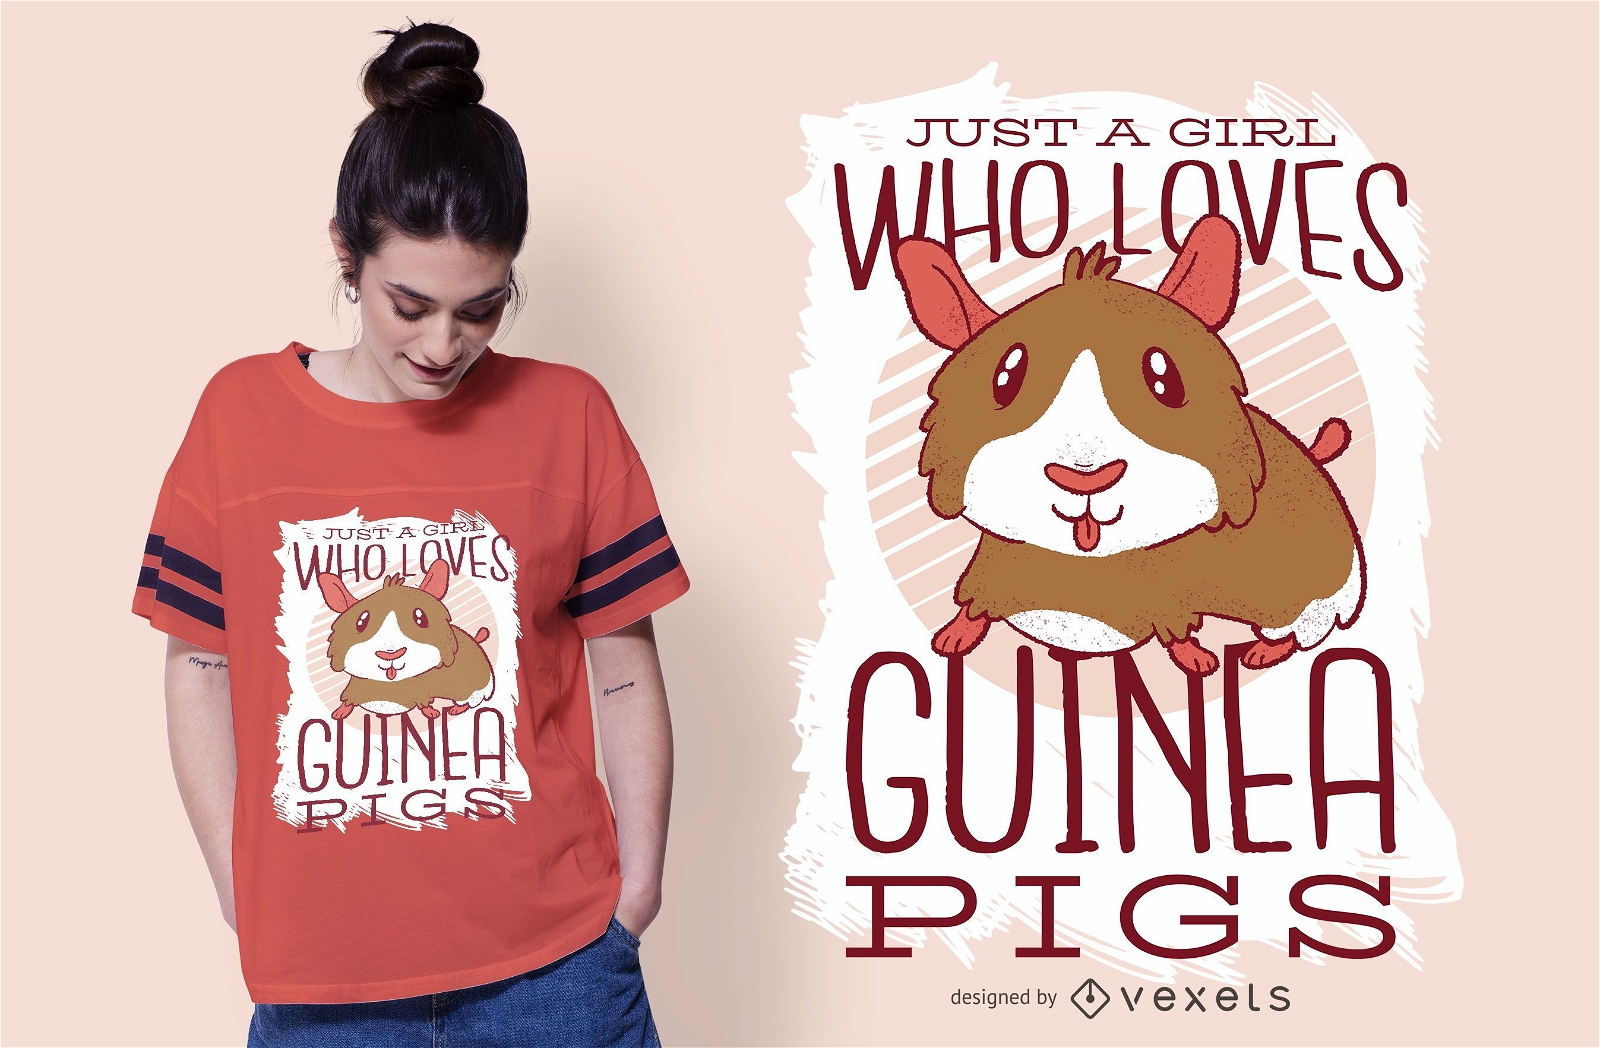 A garota adora o design de camisetas de porquinhos da índia